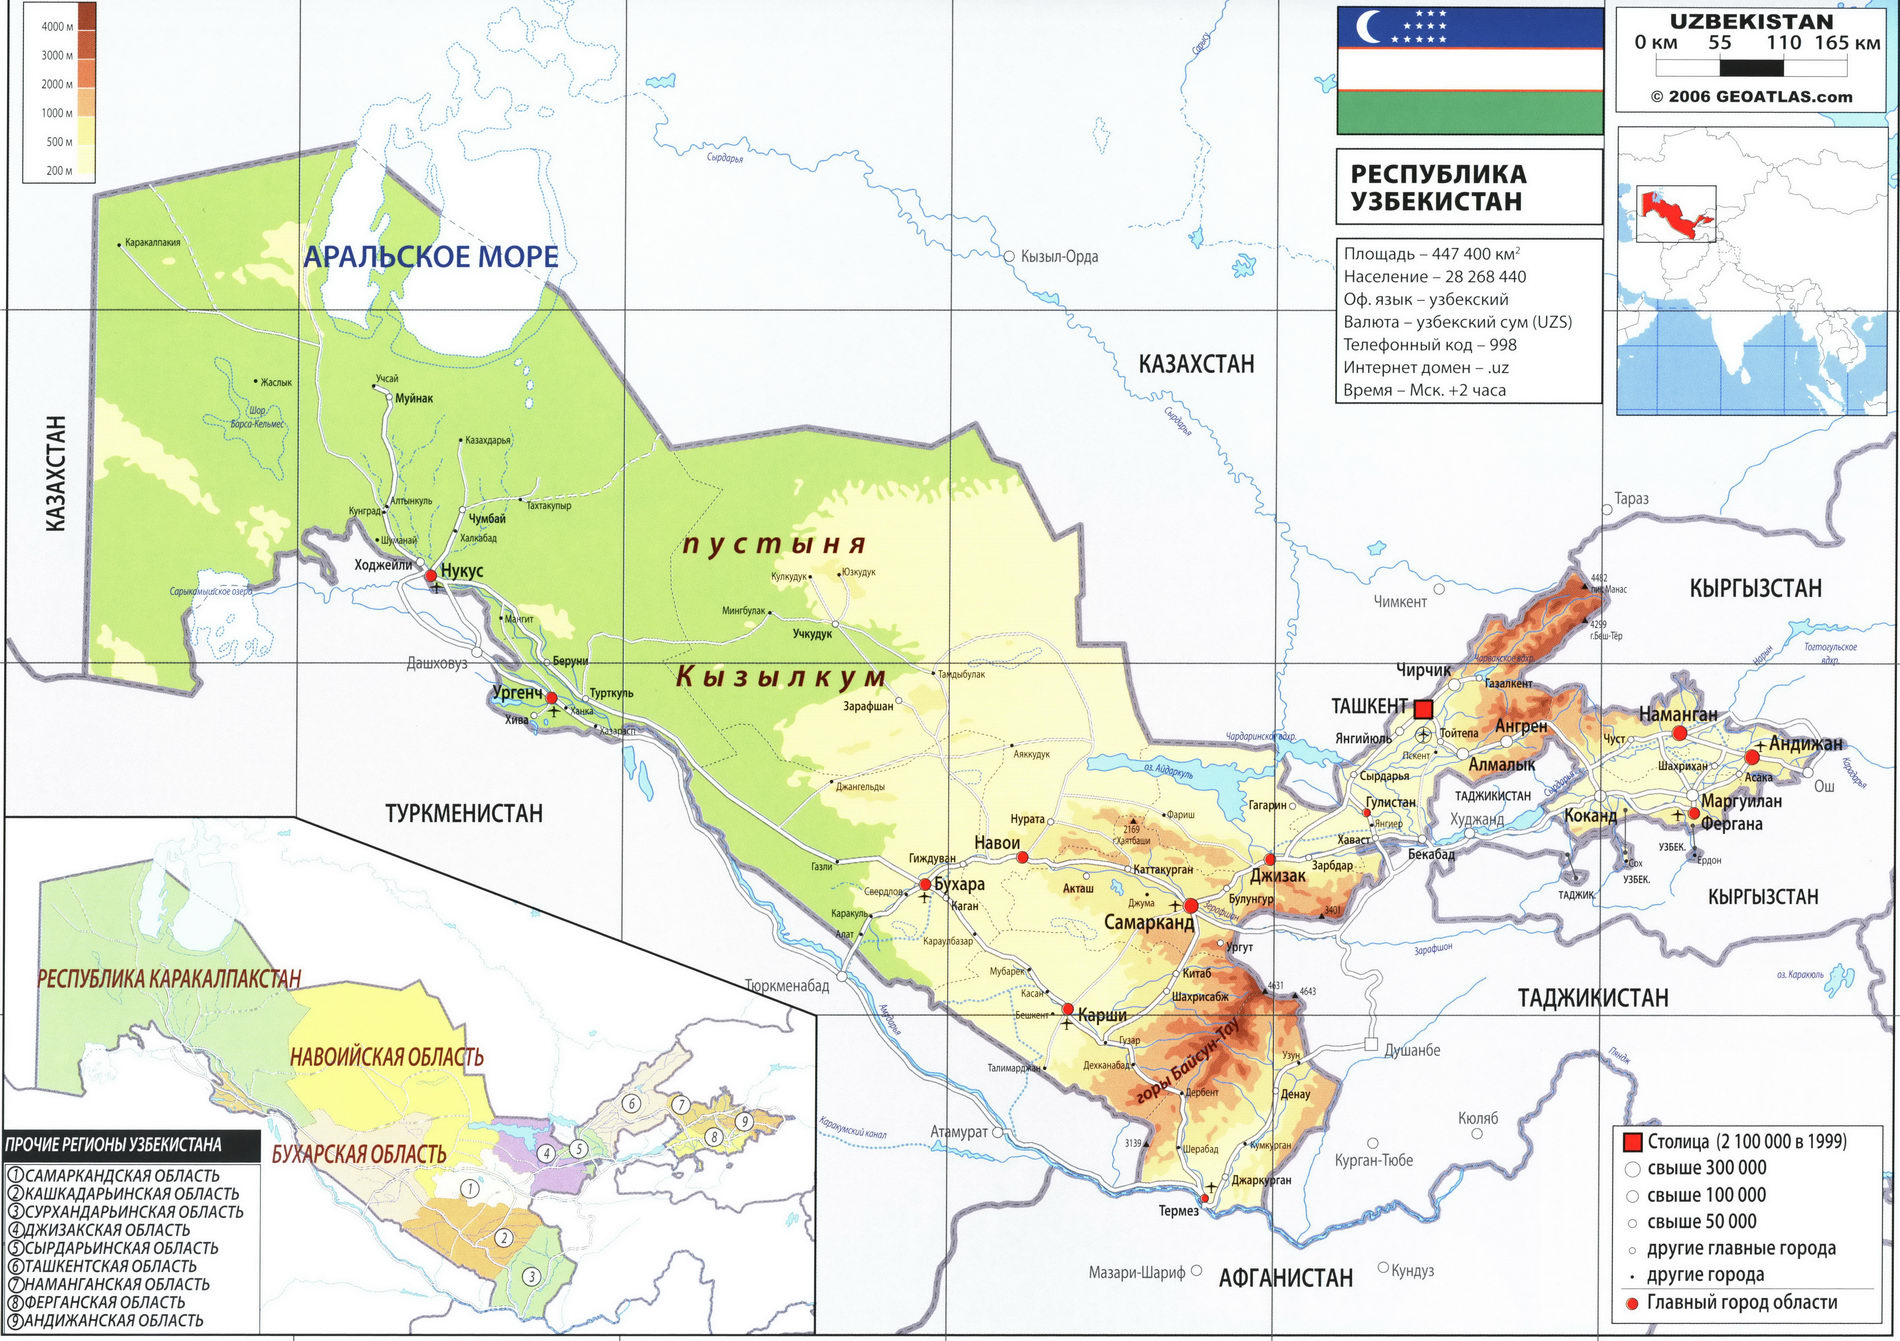 Узбекистан карта на русском языке, география описание страны - Атлас мира